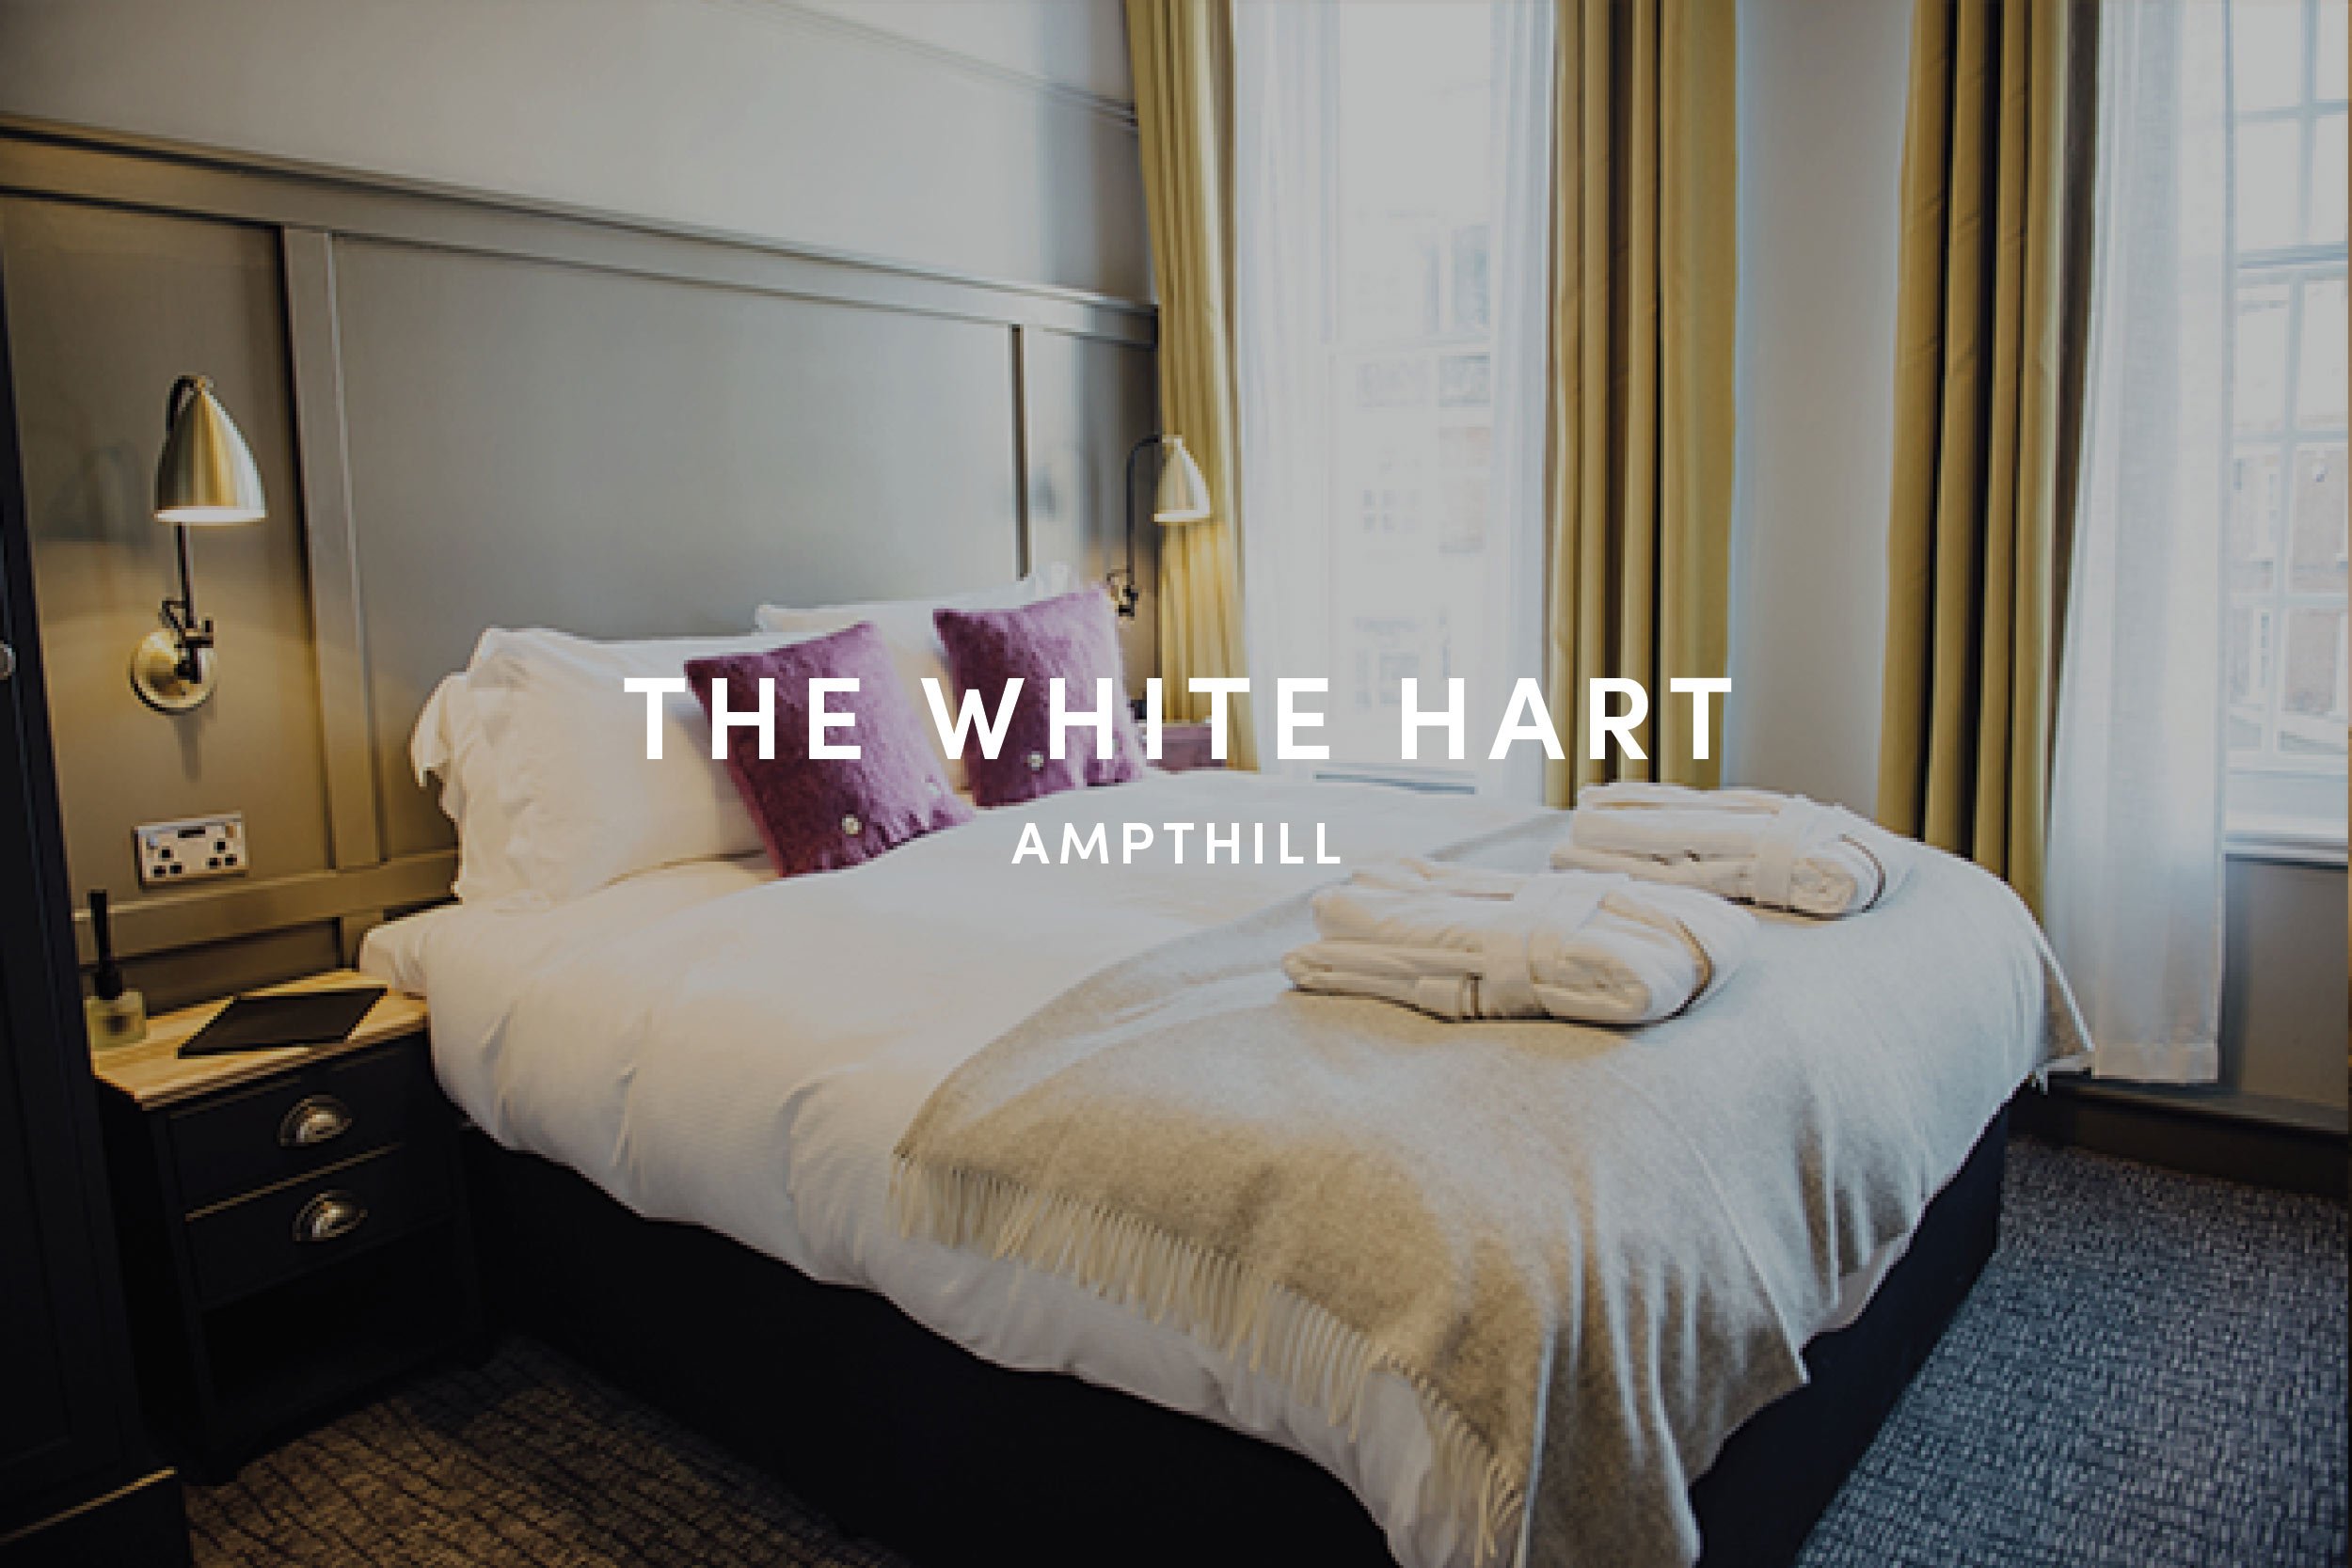 The-White-Hart-Hotel-in-Ampthill-Bedfordshire.jpg